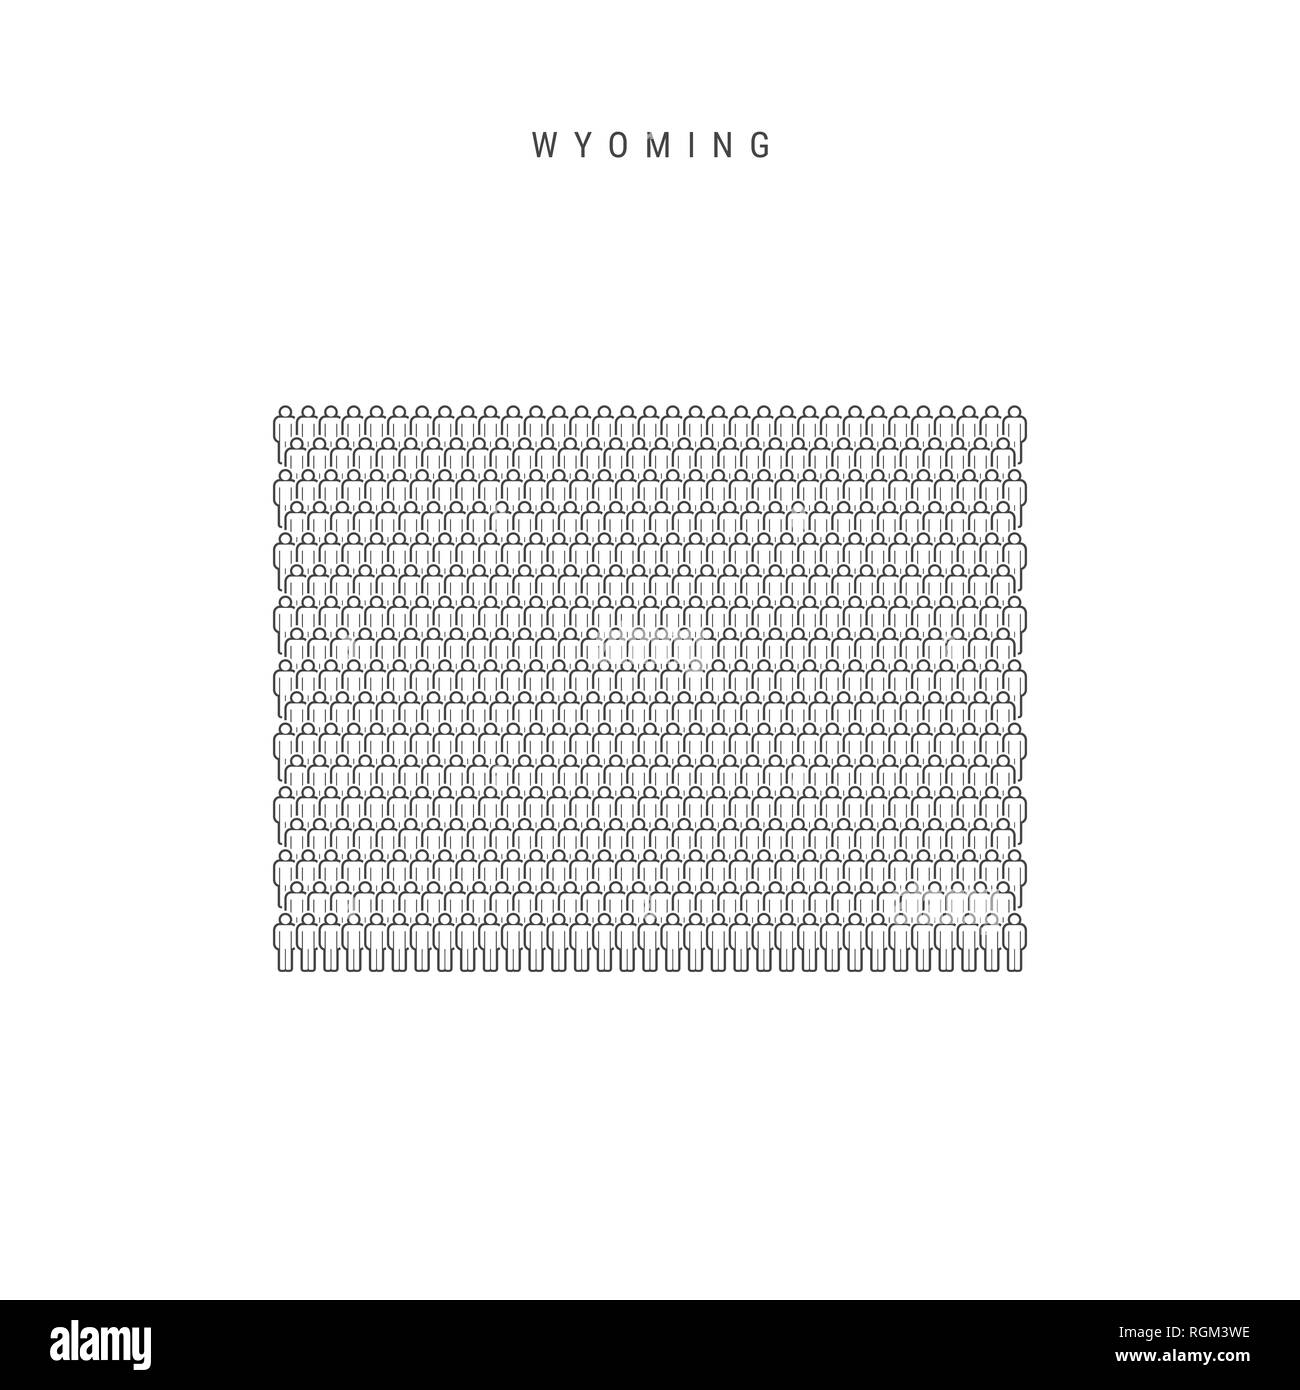 Leute Karte von Wyoming, US-Staat. Stilisierte Silhouette, Leute in der Form einer Karte von Wyoming. Wyoming Bevölkerung. Abbildung isoliert auf Whit Stockfoto